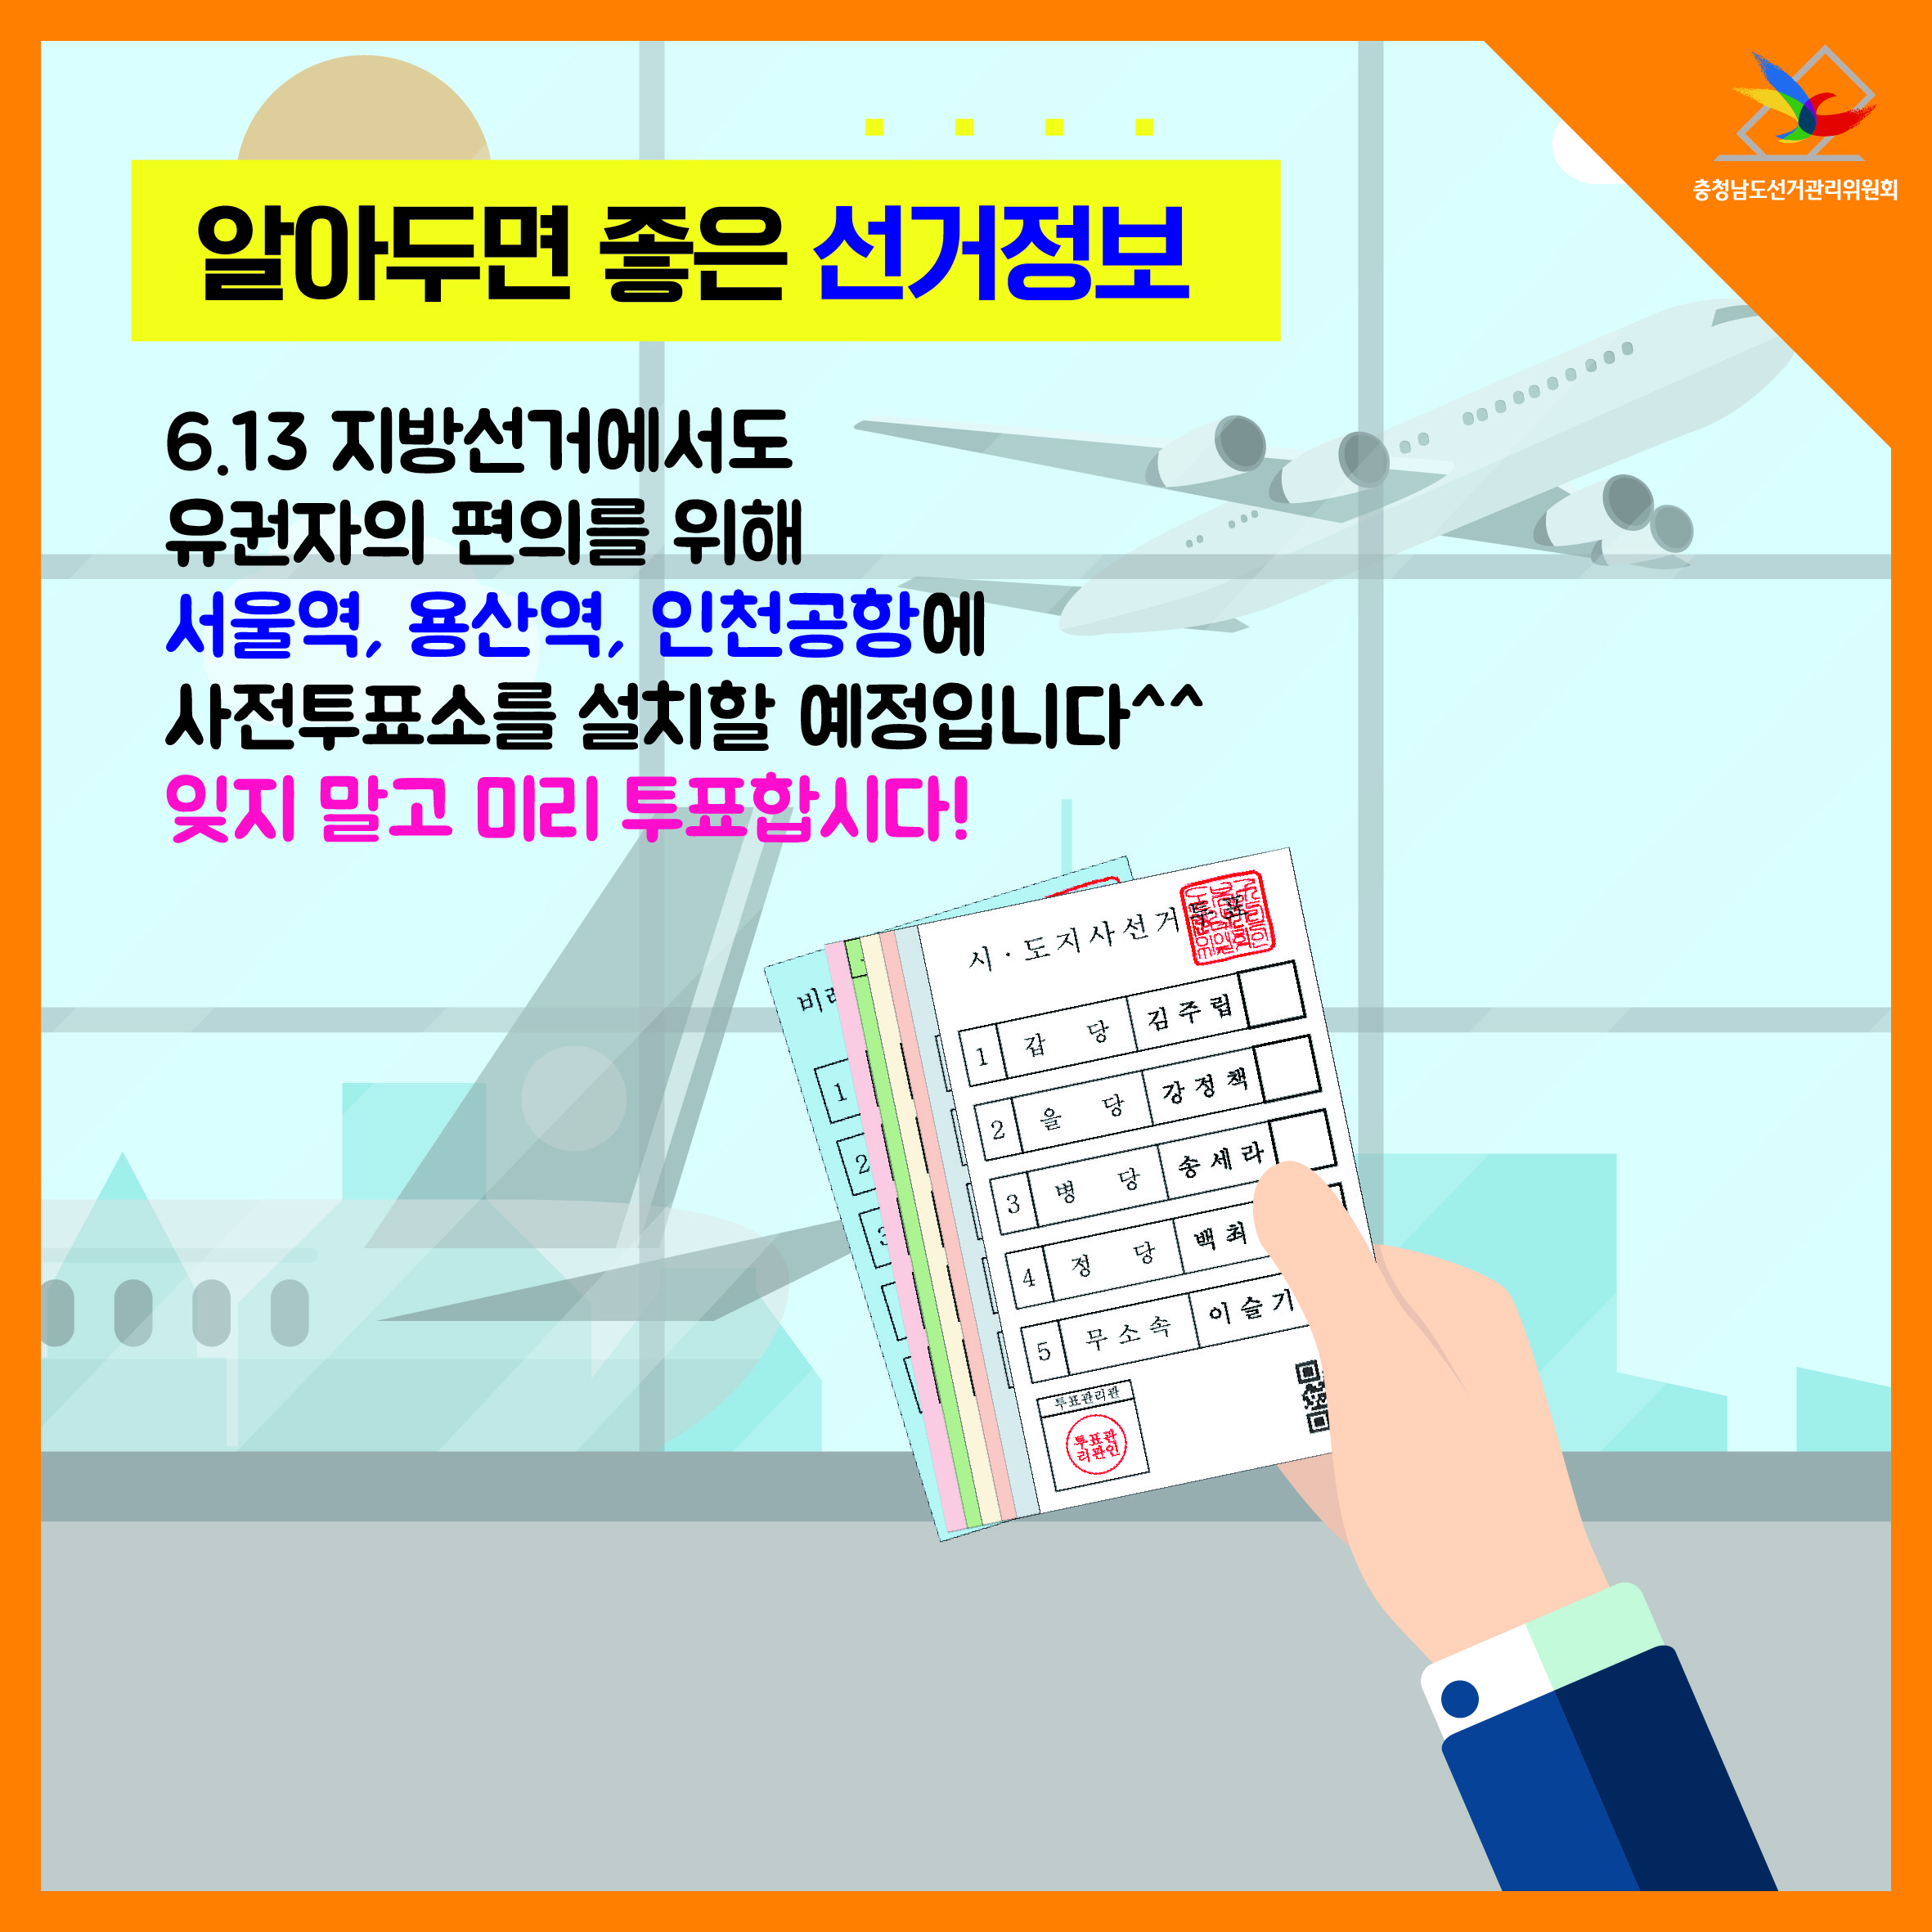 6.13 지방선거에서도 유권자의 편의를 위해 서울역, 용산역, 인천공항에 사전투표소를 설치할 에정입니다. 잊지 말고 미리 투표합시다